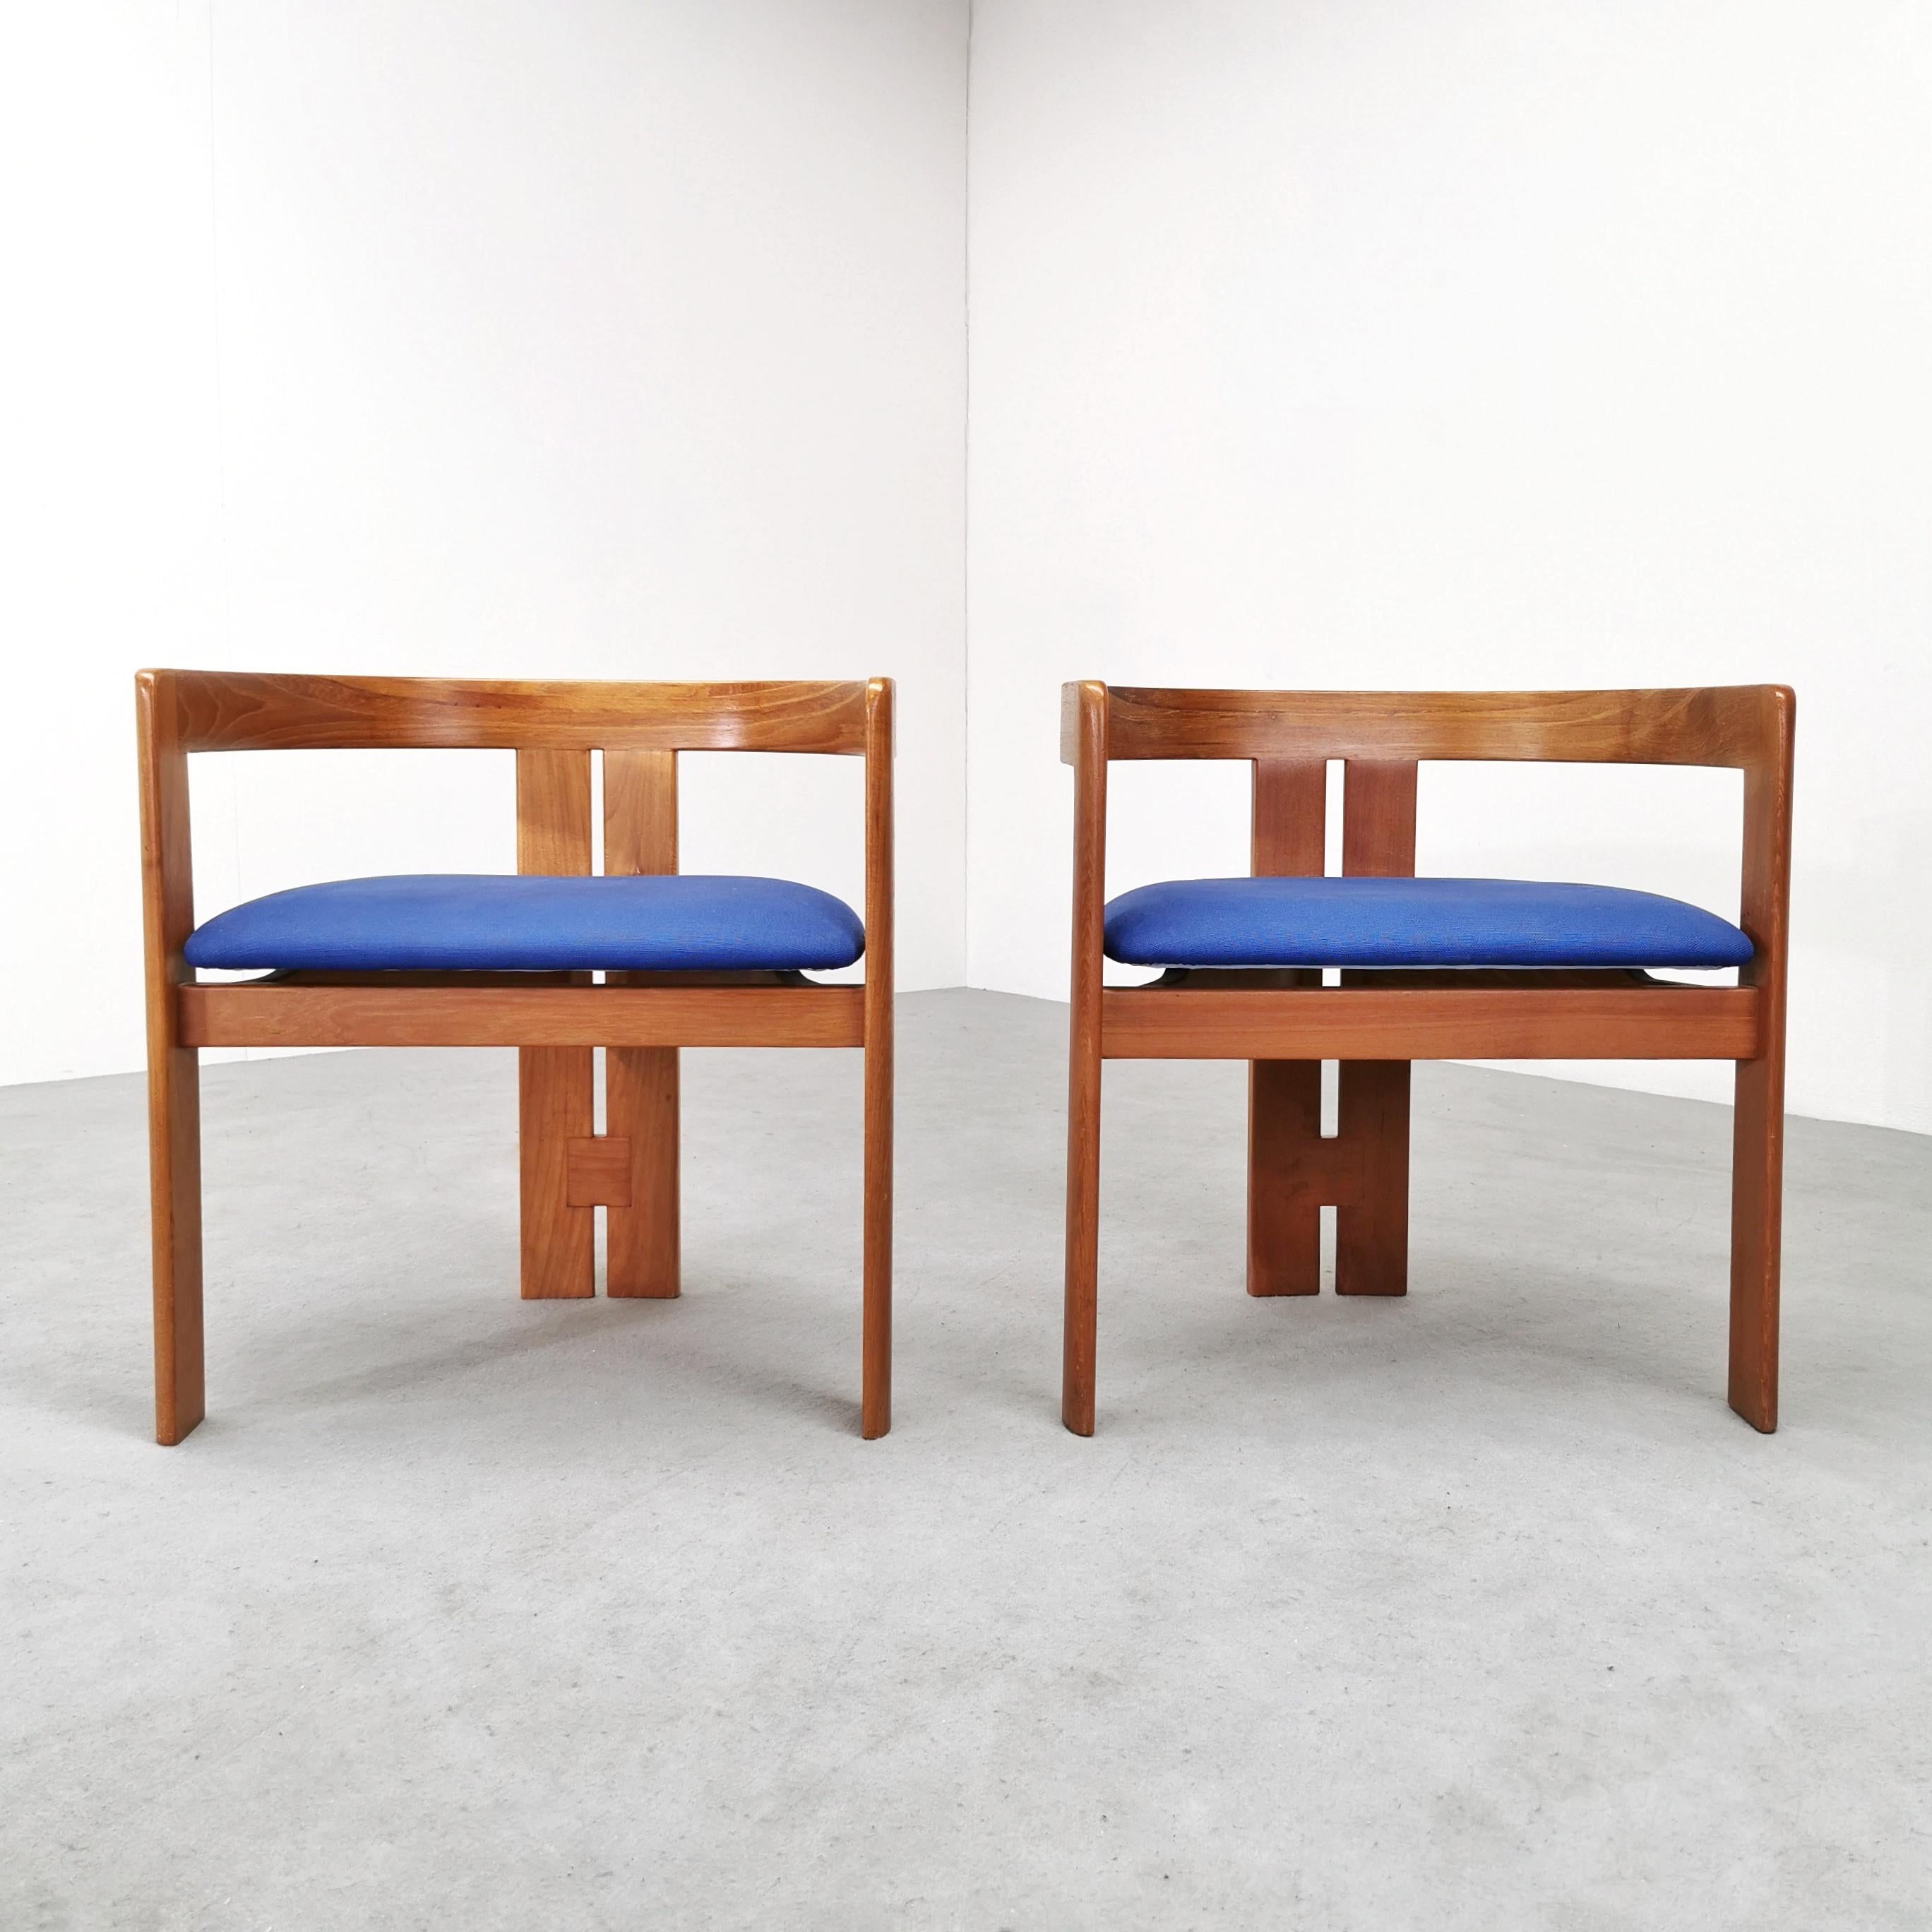 Paar Sessel Modell Pigreco entworfen in den 1960er Jahren von Tobia Scarpa für Gavina. Helles Holzgestell und hellblauer Stoffsitz. Die Sessel sind in ausgezeichnetem Zustand.